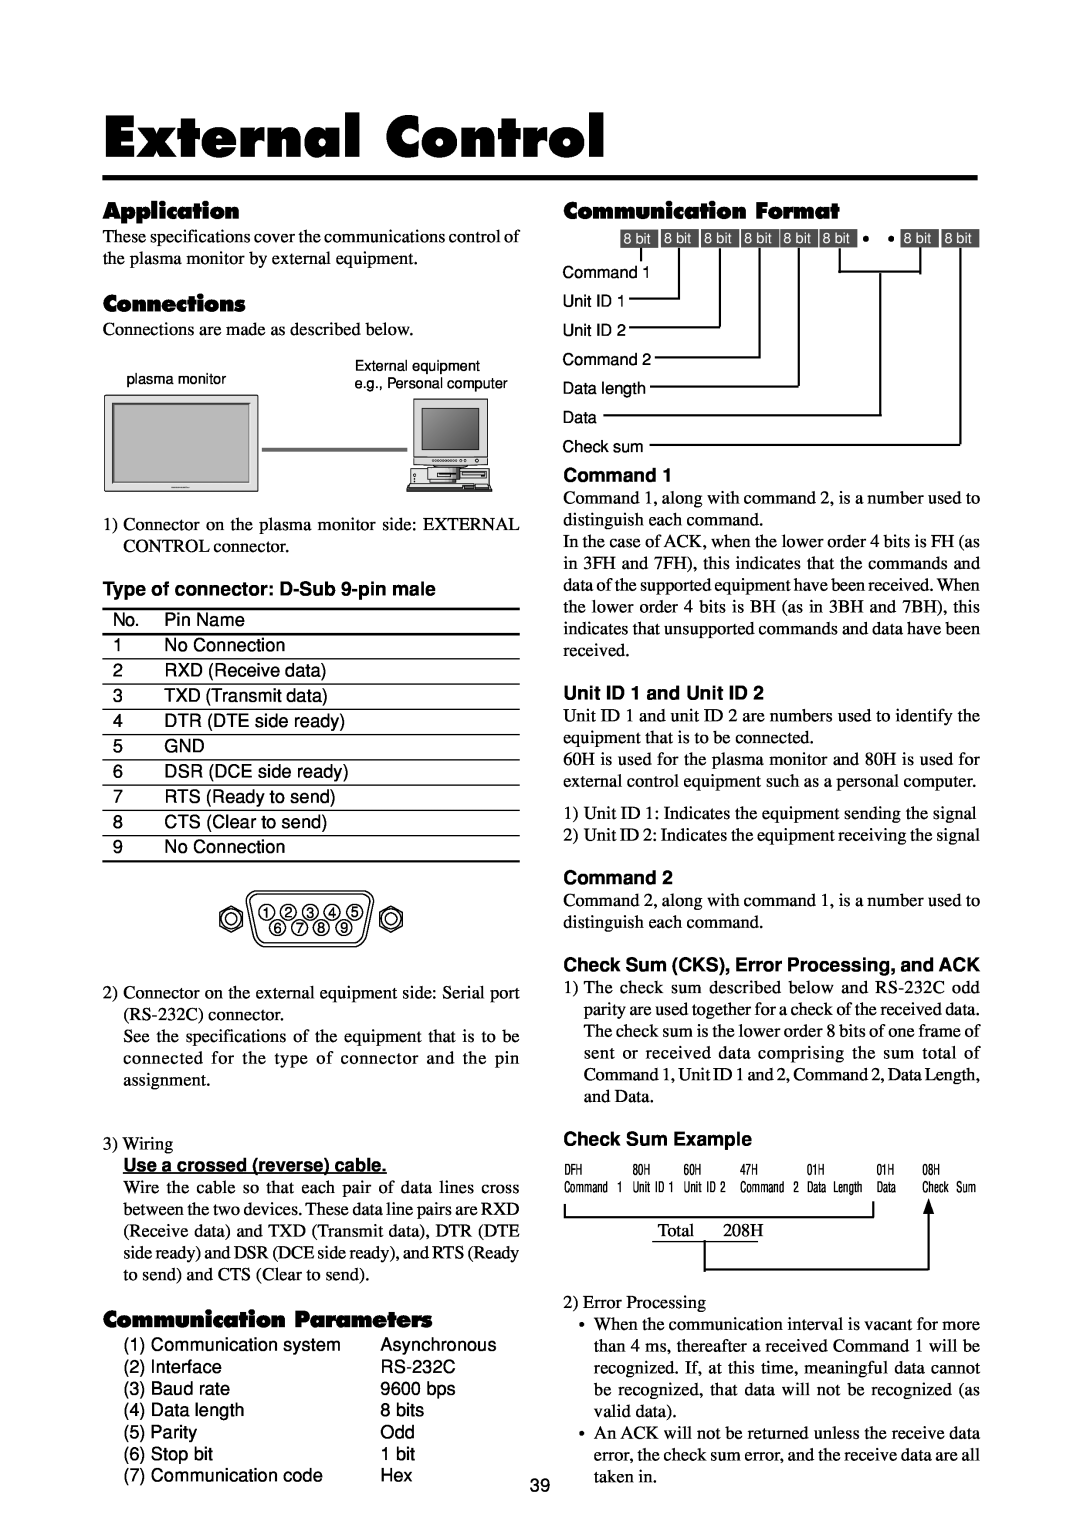 Marantz PD4293D manual External Control, Application, Connections, Communication Format, Communication Parameters, Command 